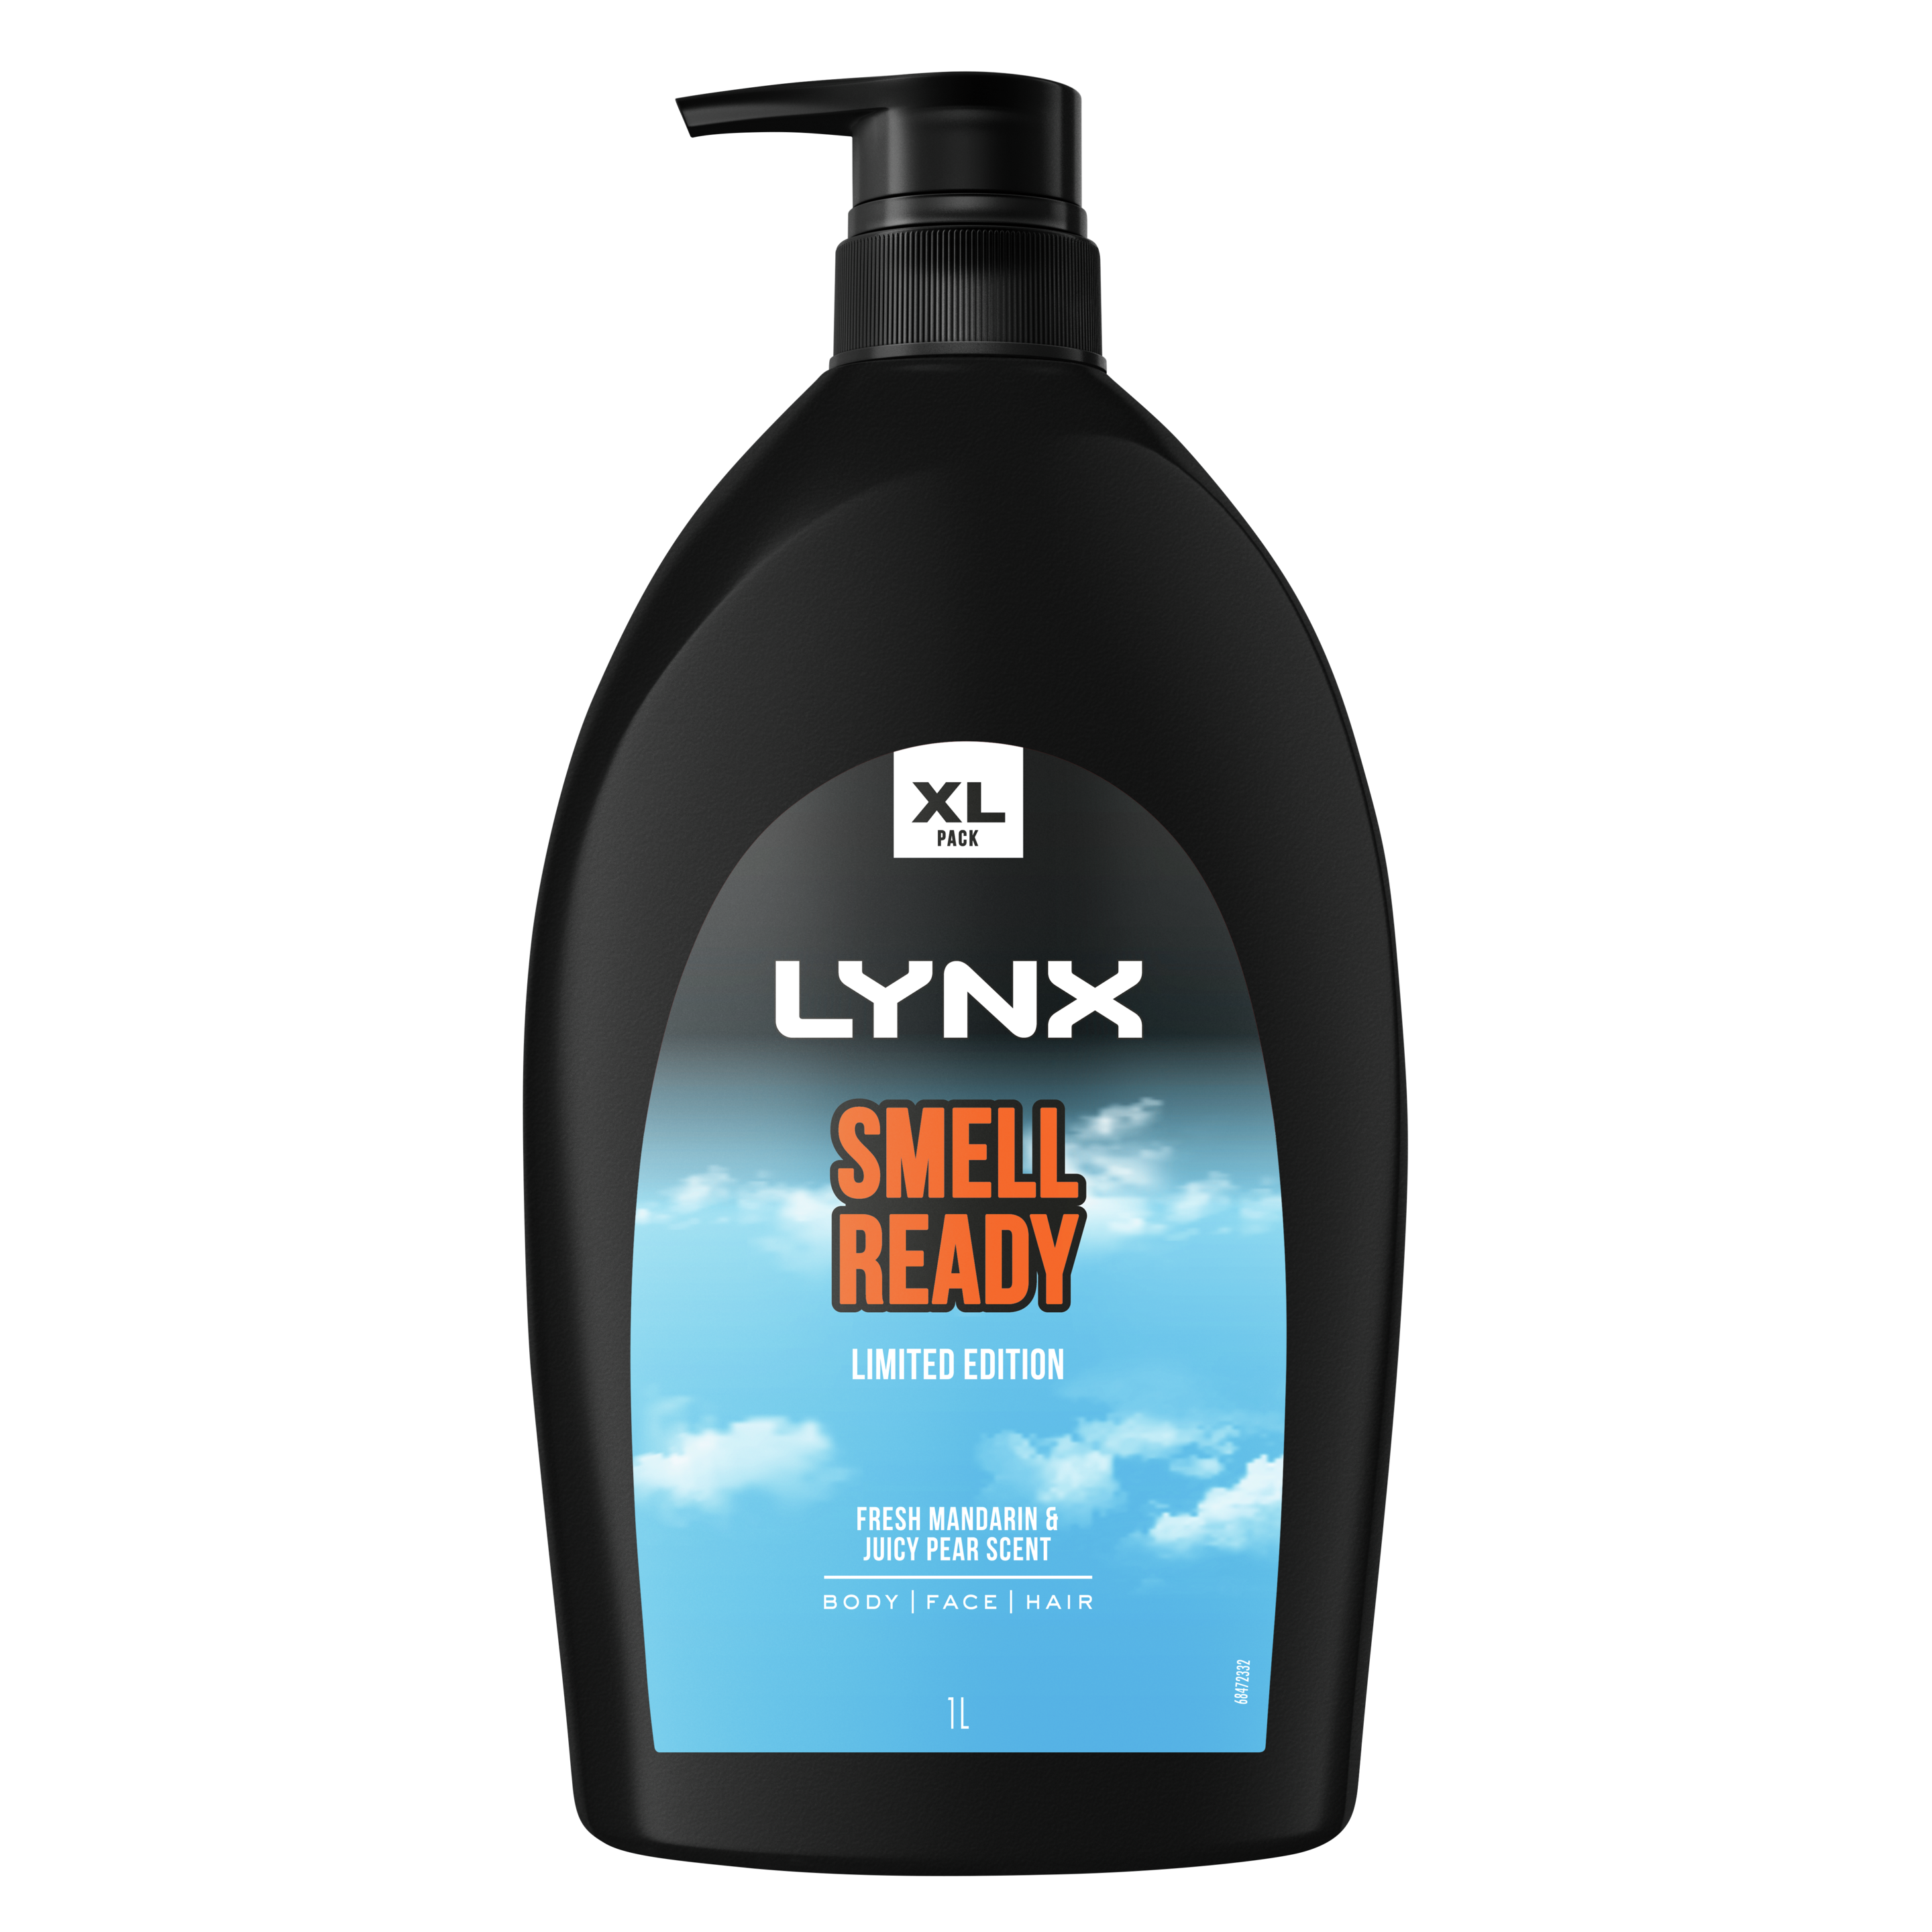 Lynx Smell Ready Limited Edition Body Wash XL